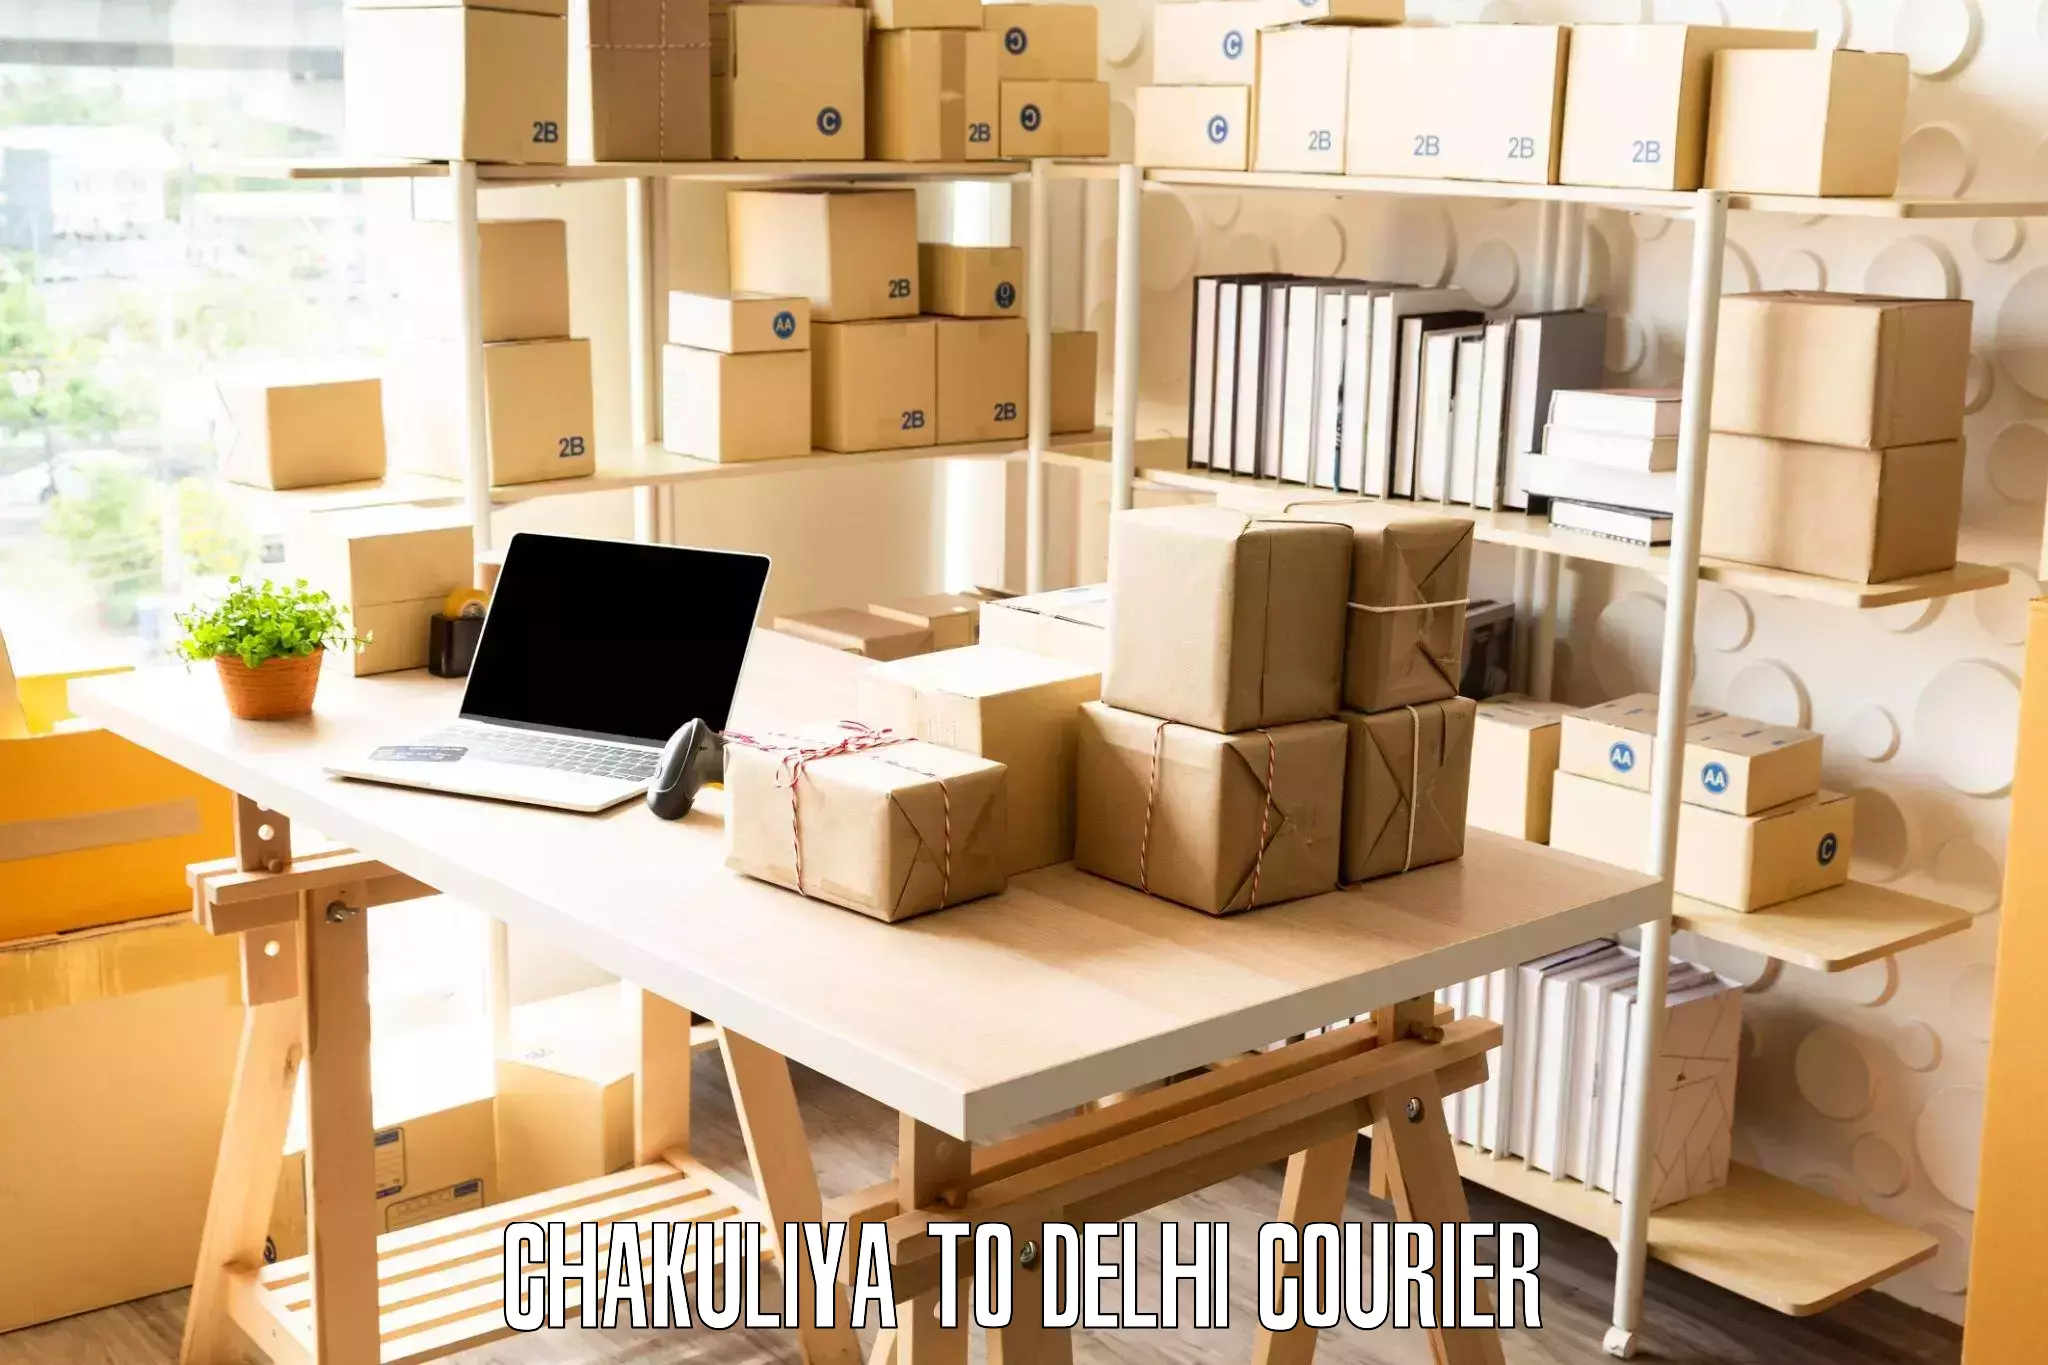 Moving and storage services Chakuliya to Delhi